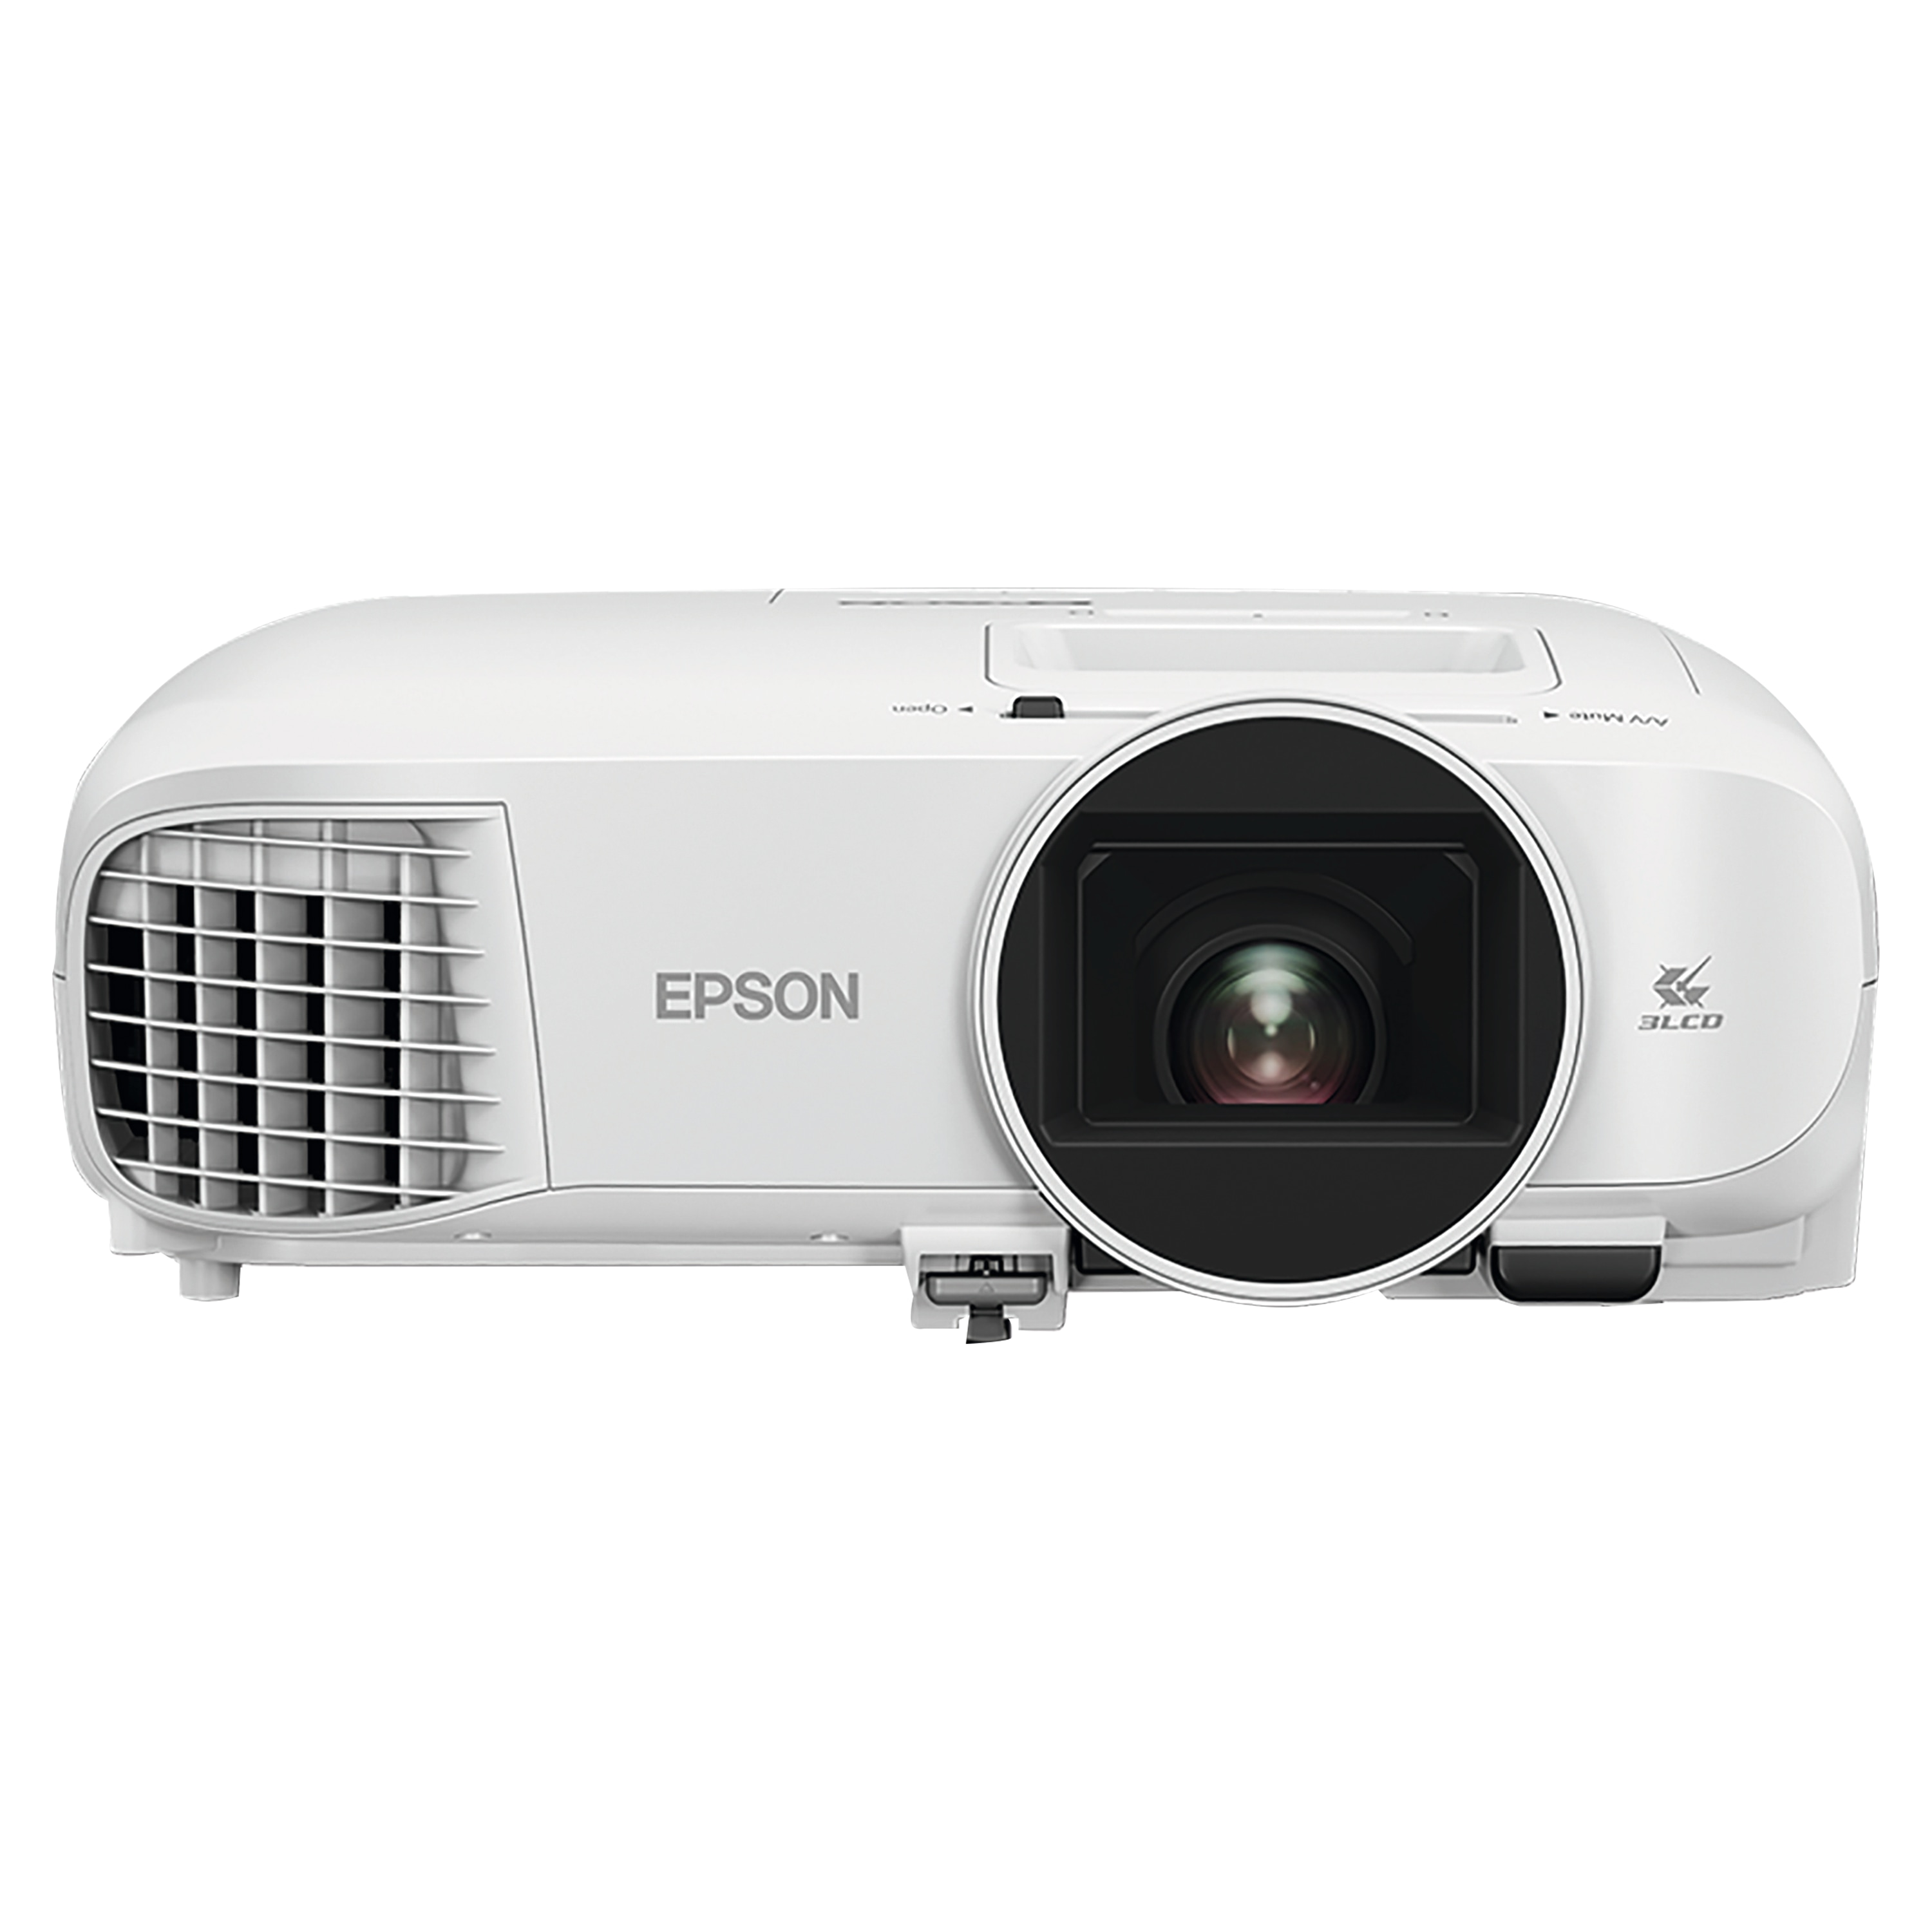 EPSON EH-TW5400 Full-HD Projektor, 1080p, 2500 Lumen, Entertainment im Großformat, Kontrastverhältnis von 30.000:1, Lampenlebensdauer 7500 Stunden, HDMI, VGA, USB 2.0